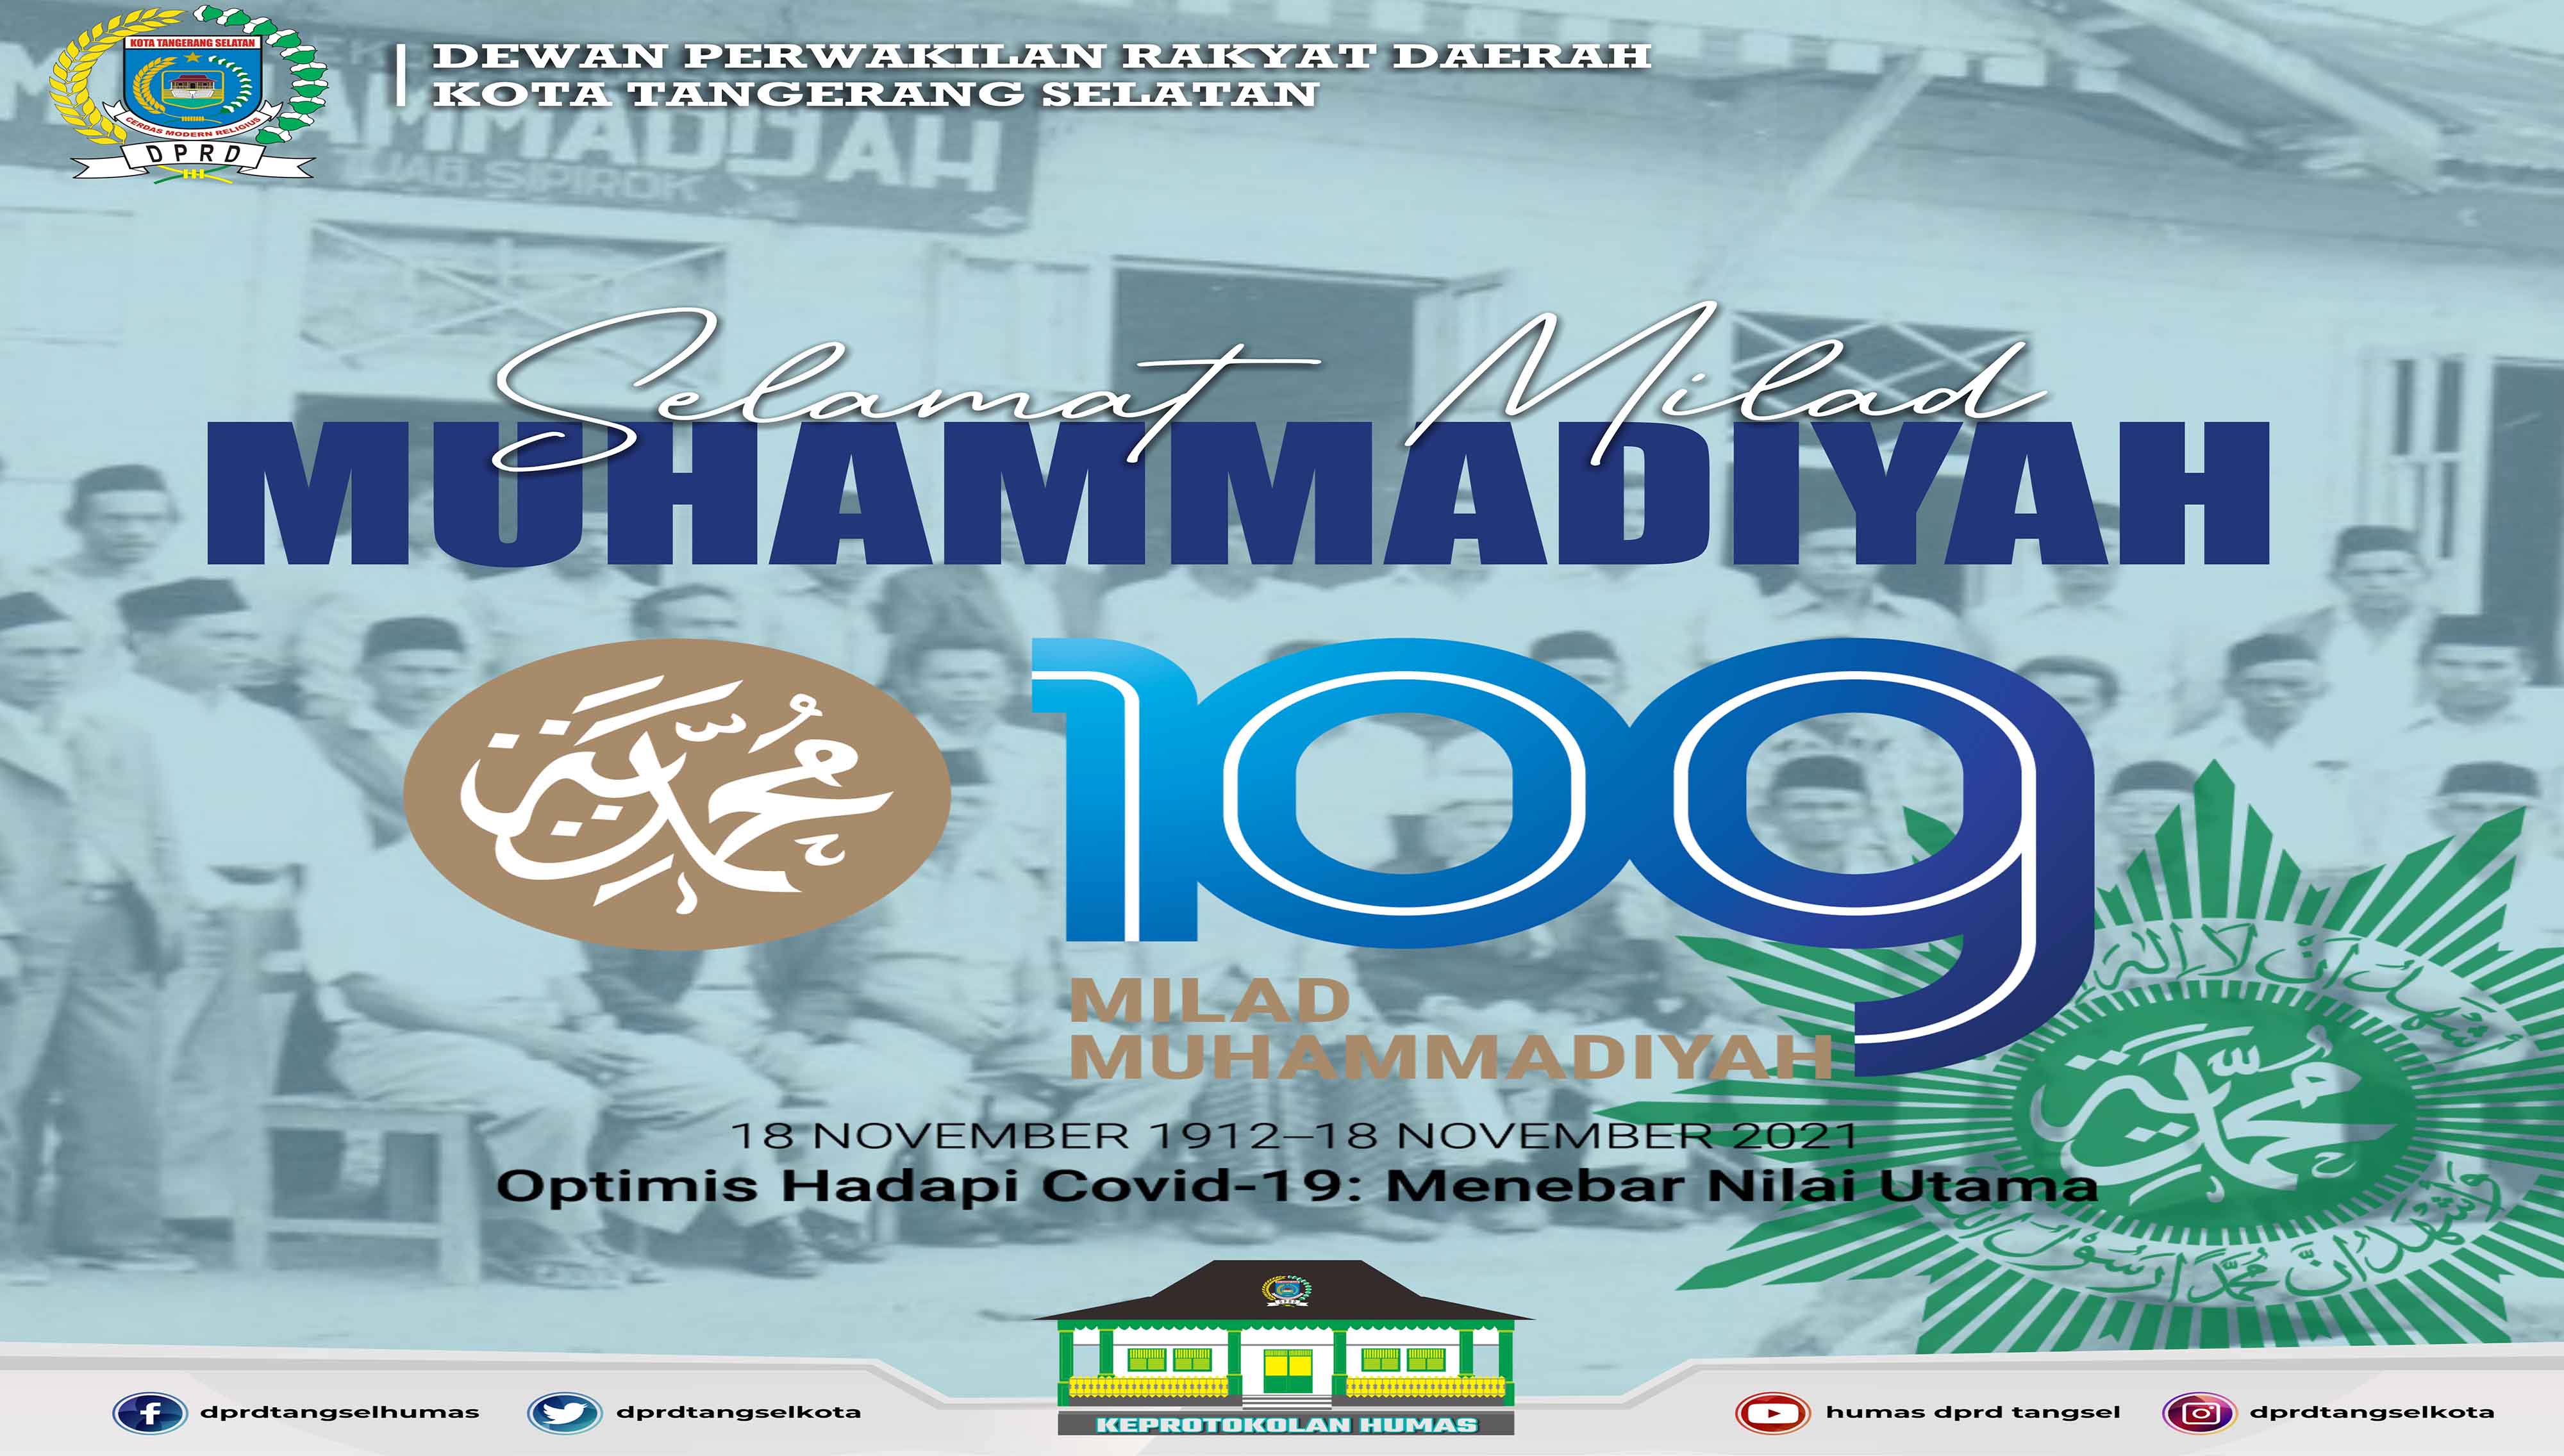 Selamat Milad Muhammadiyah ke-109